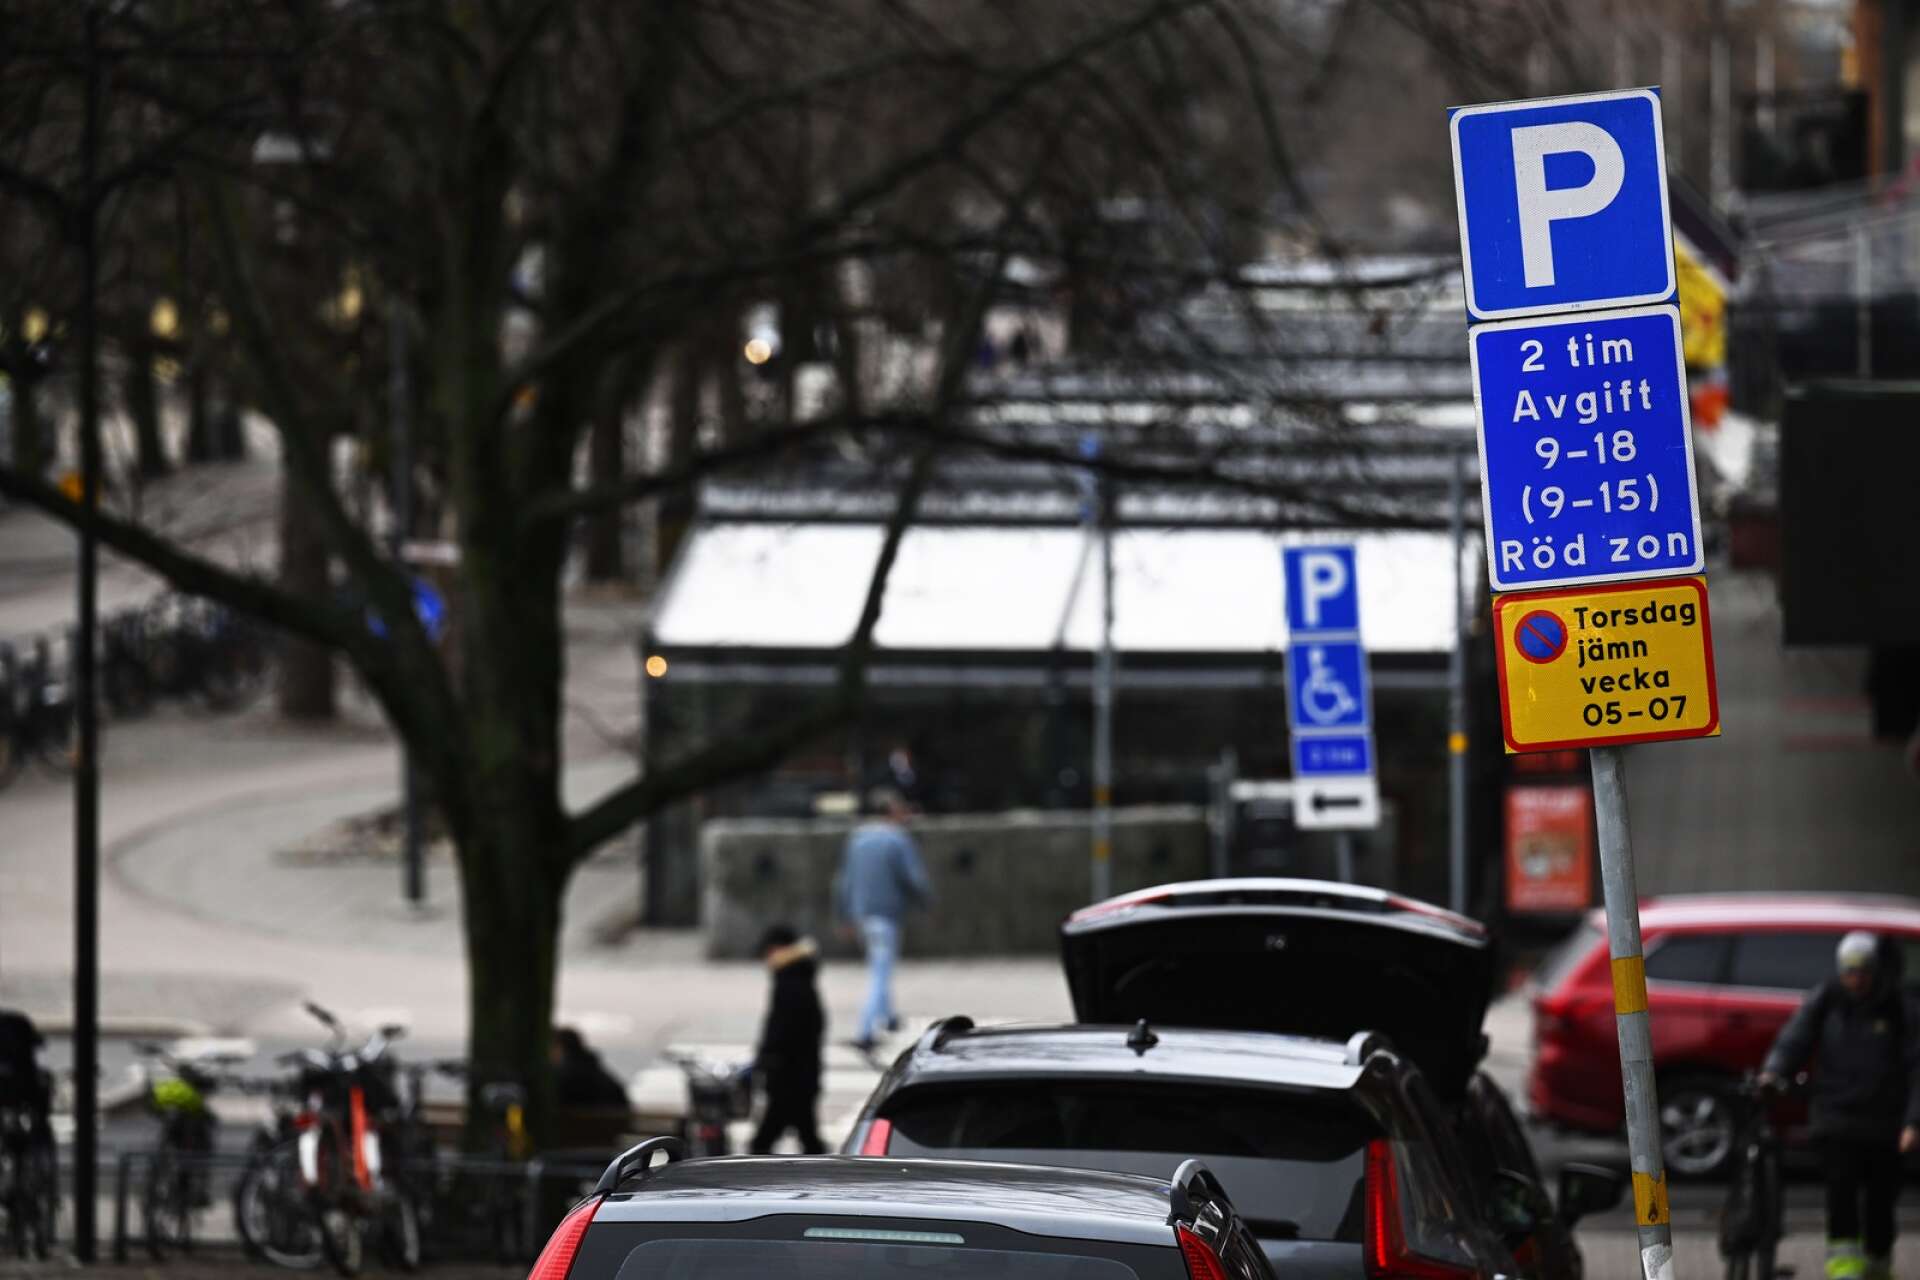 Karlstads borgerliga allians vill att det skyndsamt och på prov införs två timmars gratis parkering i centrala Karlstad.